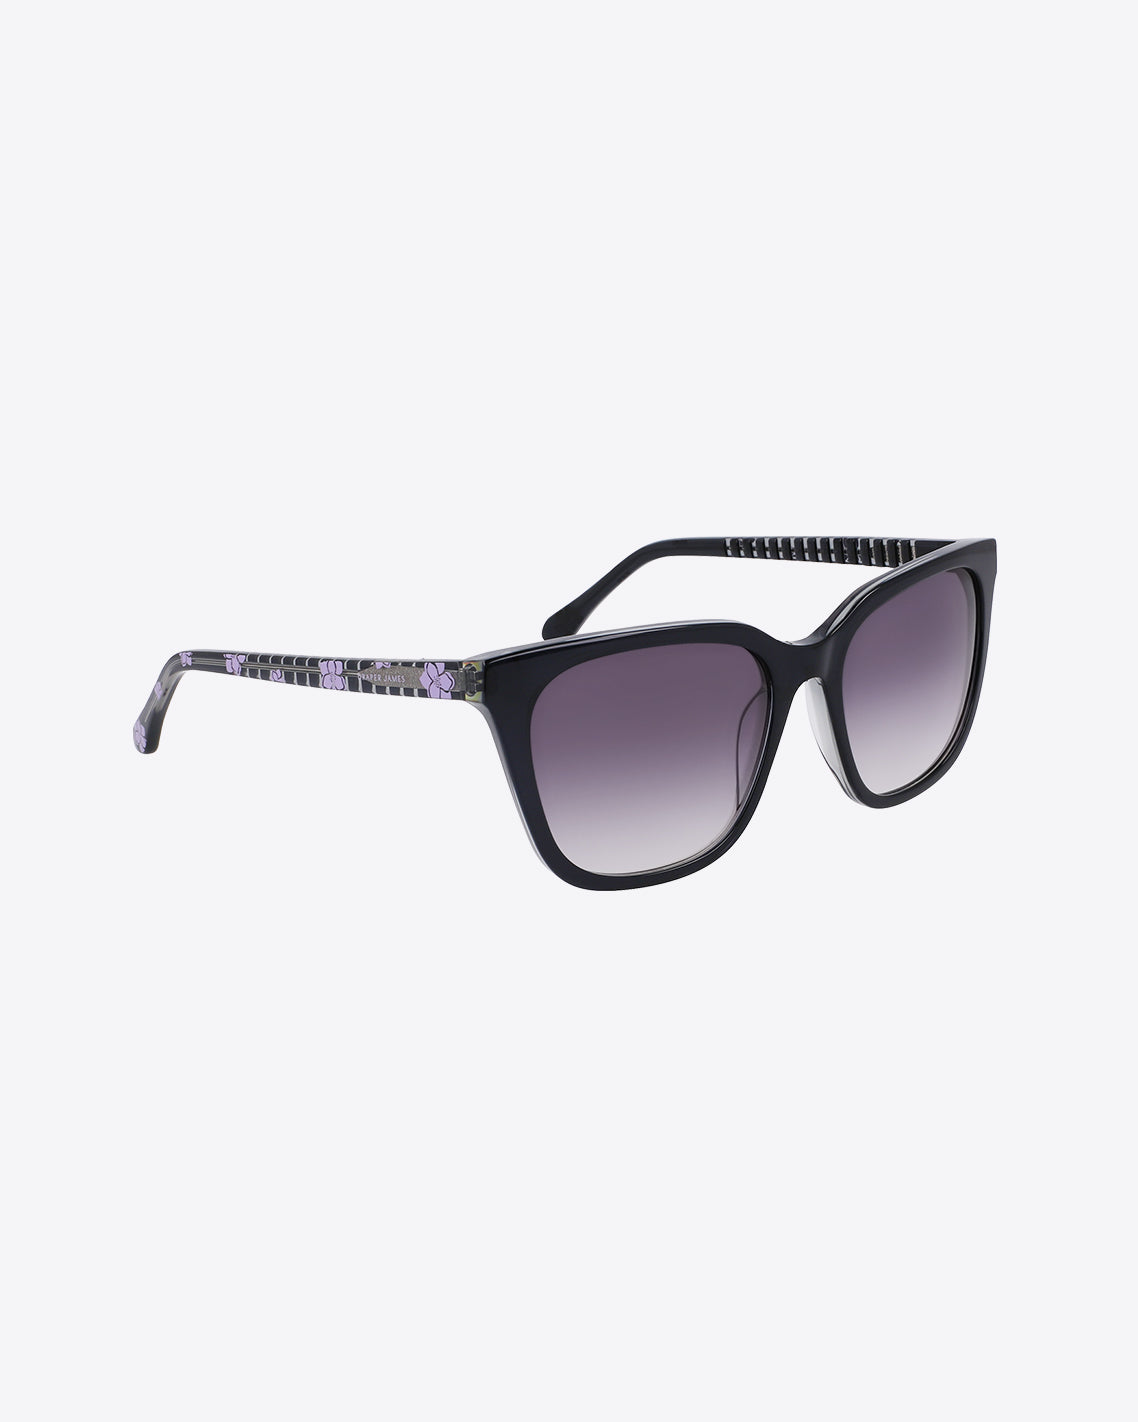 Laura Sunglasses in Black